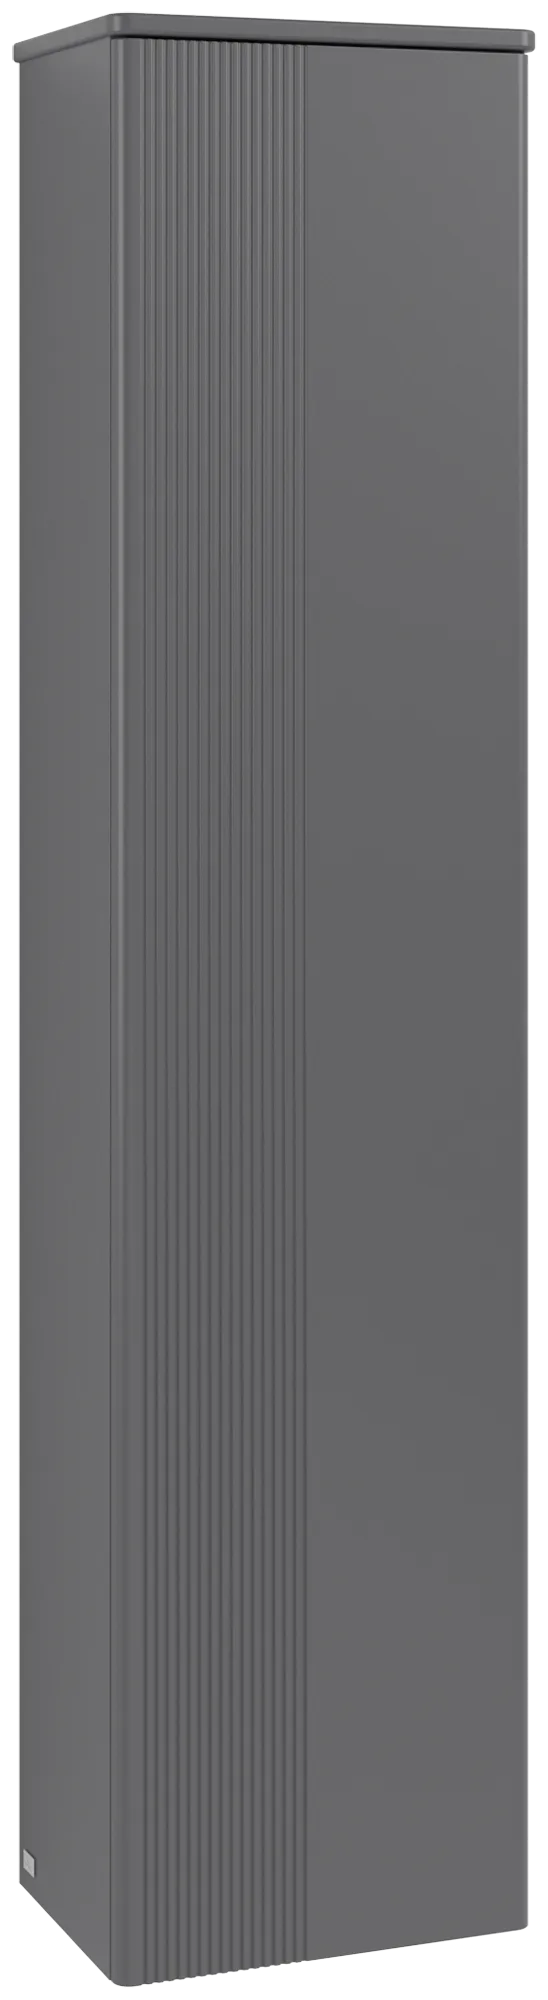 Bild von VILLEROY BOCH Antao Hochschrank, 1 Tür, 414 x 1719 x 287 mm, Front mit Struktur, Anthracite Matt Lacquer / Anthracite Matt Lacquer #K46100GK